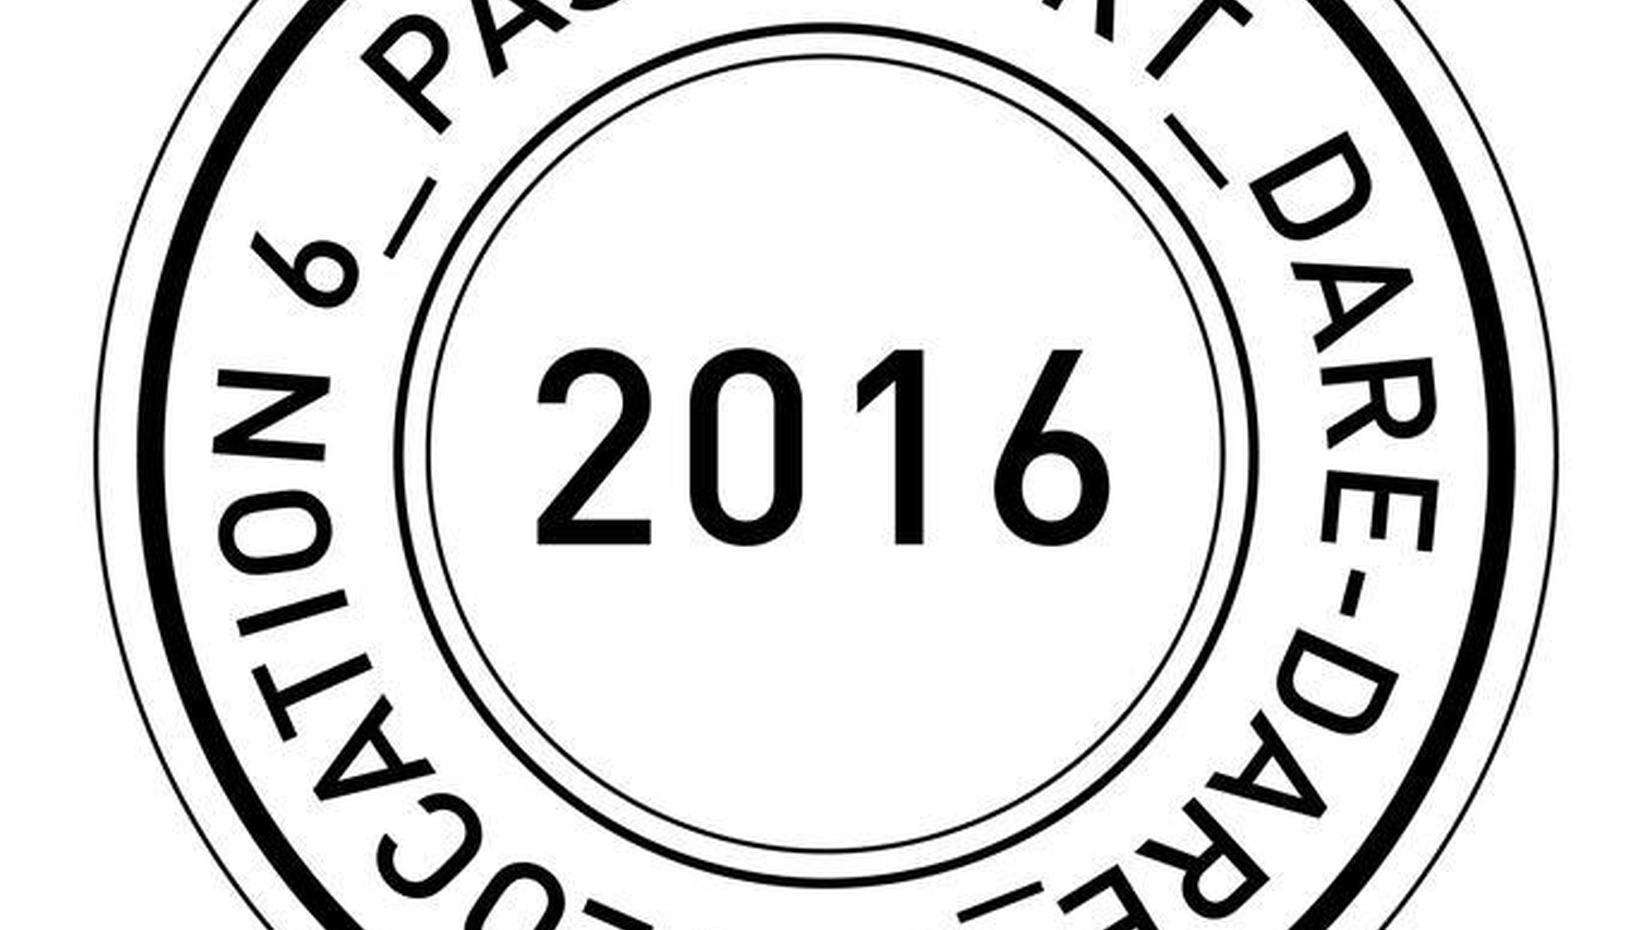 PASSEPORT 2016 + FESTIVITIES